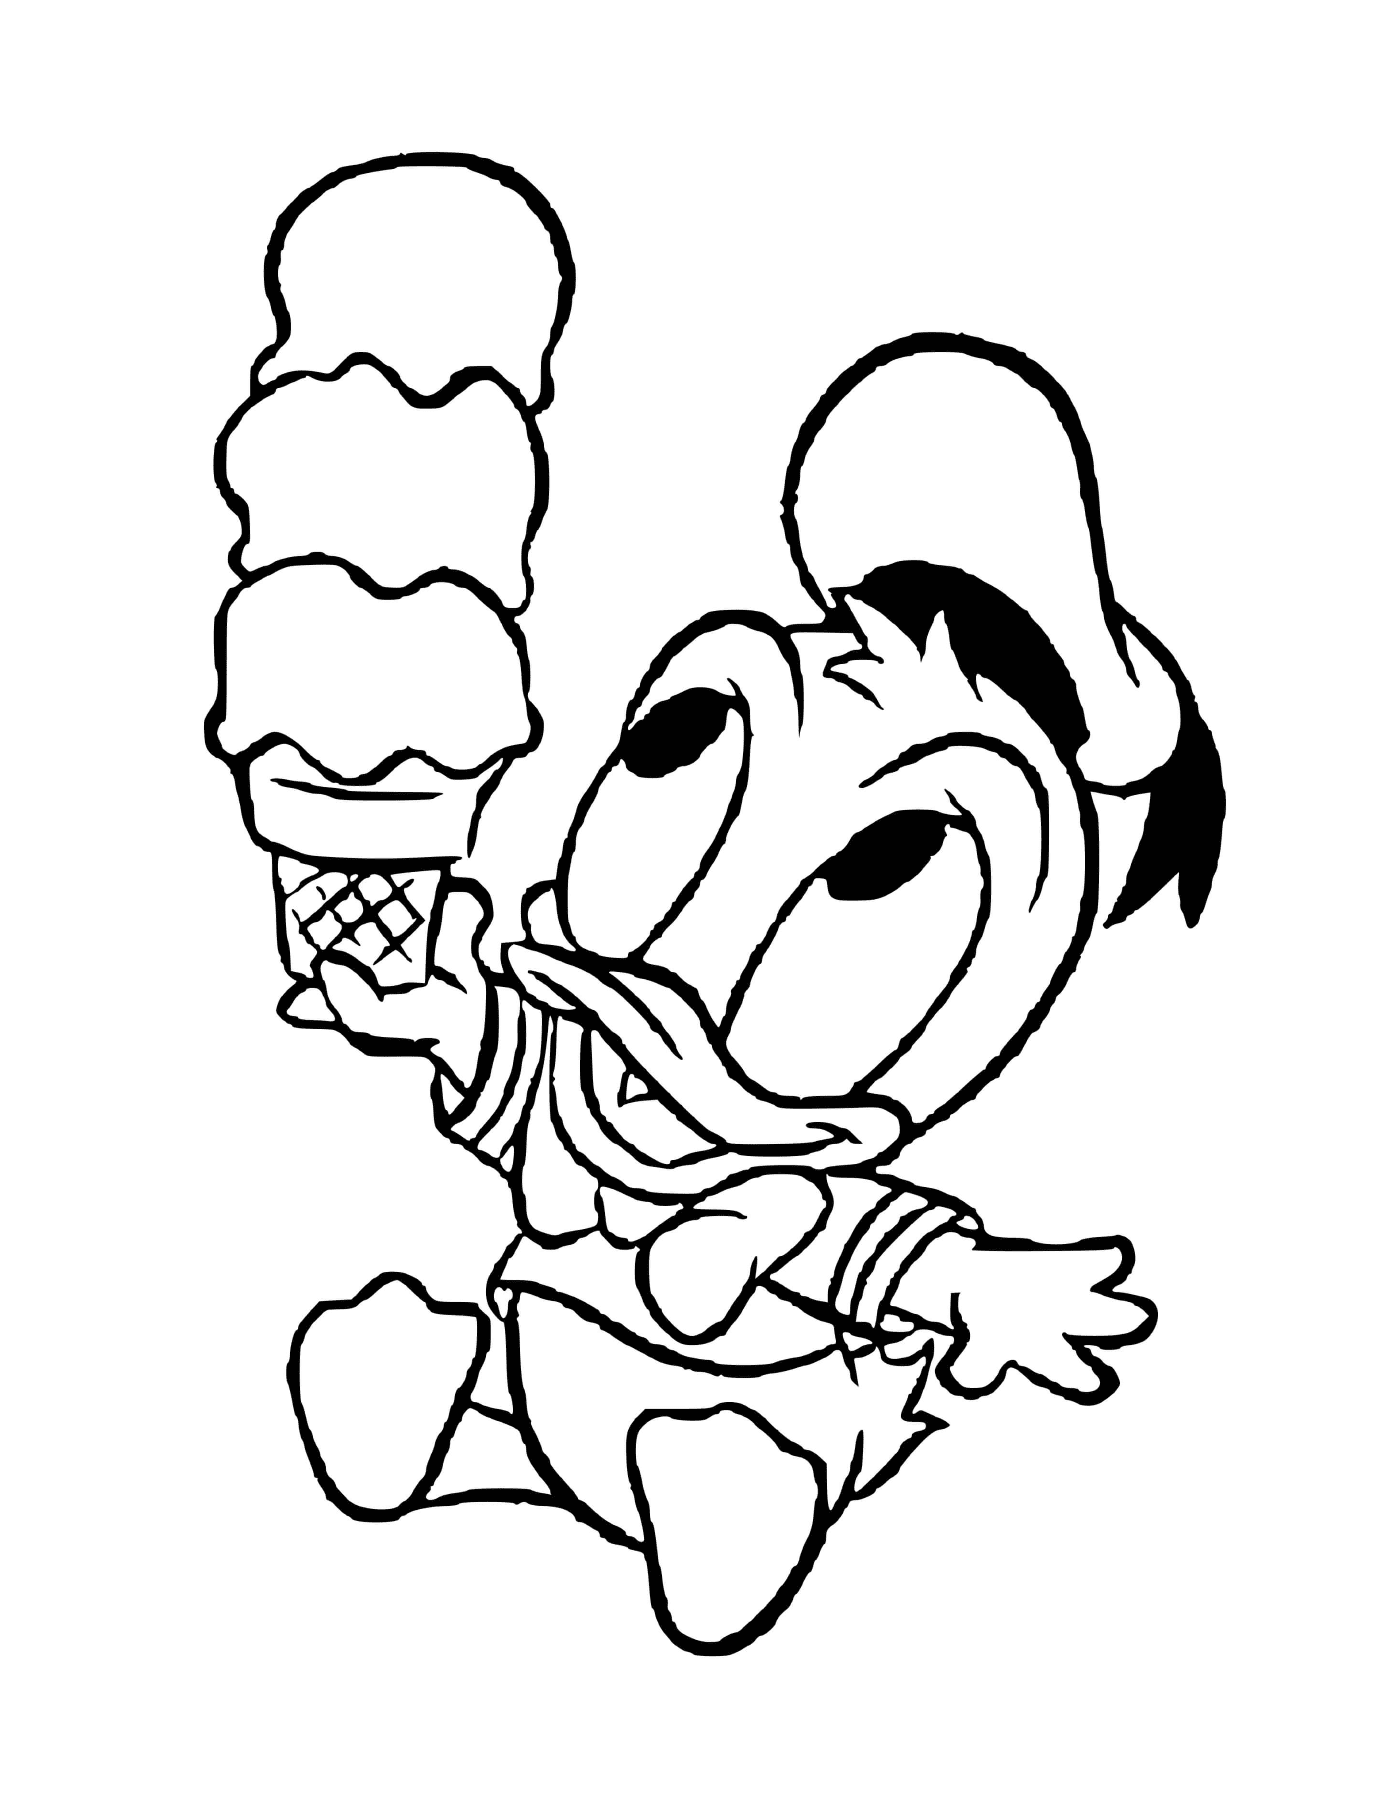  Donald Duck Baby liebt Eis 